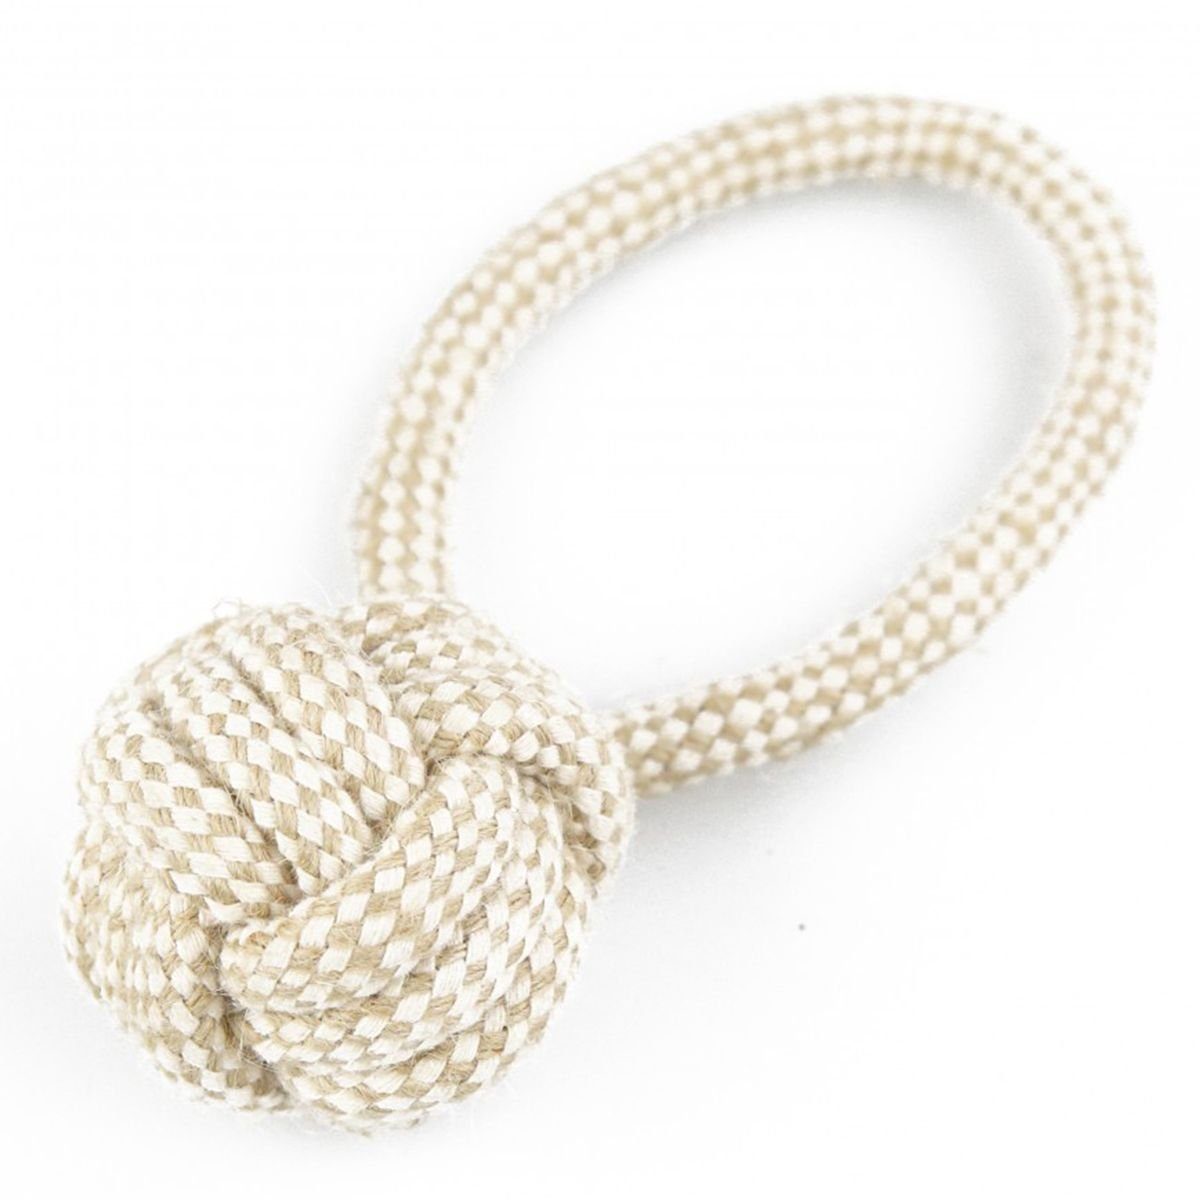 Tierball Seil mit Kordelball ca. 5 x 17 cm Baumwolle Hundespielzeug beige, Baumwolle, natürlich hergestellt